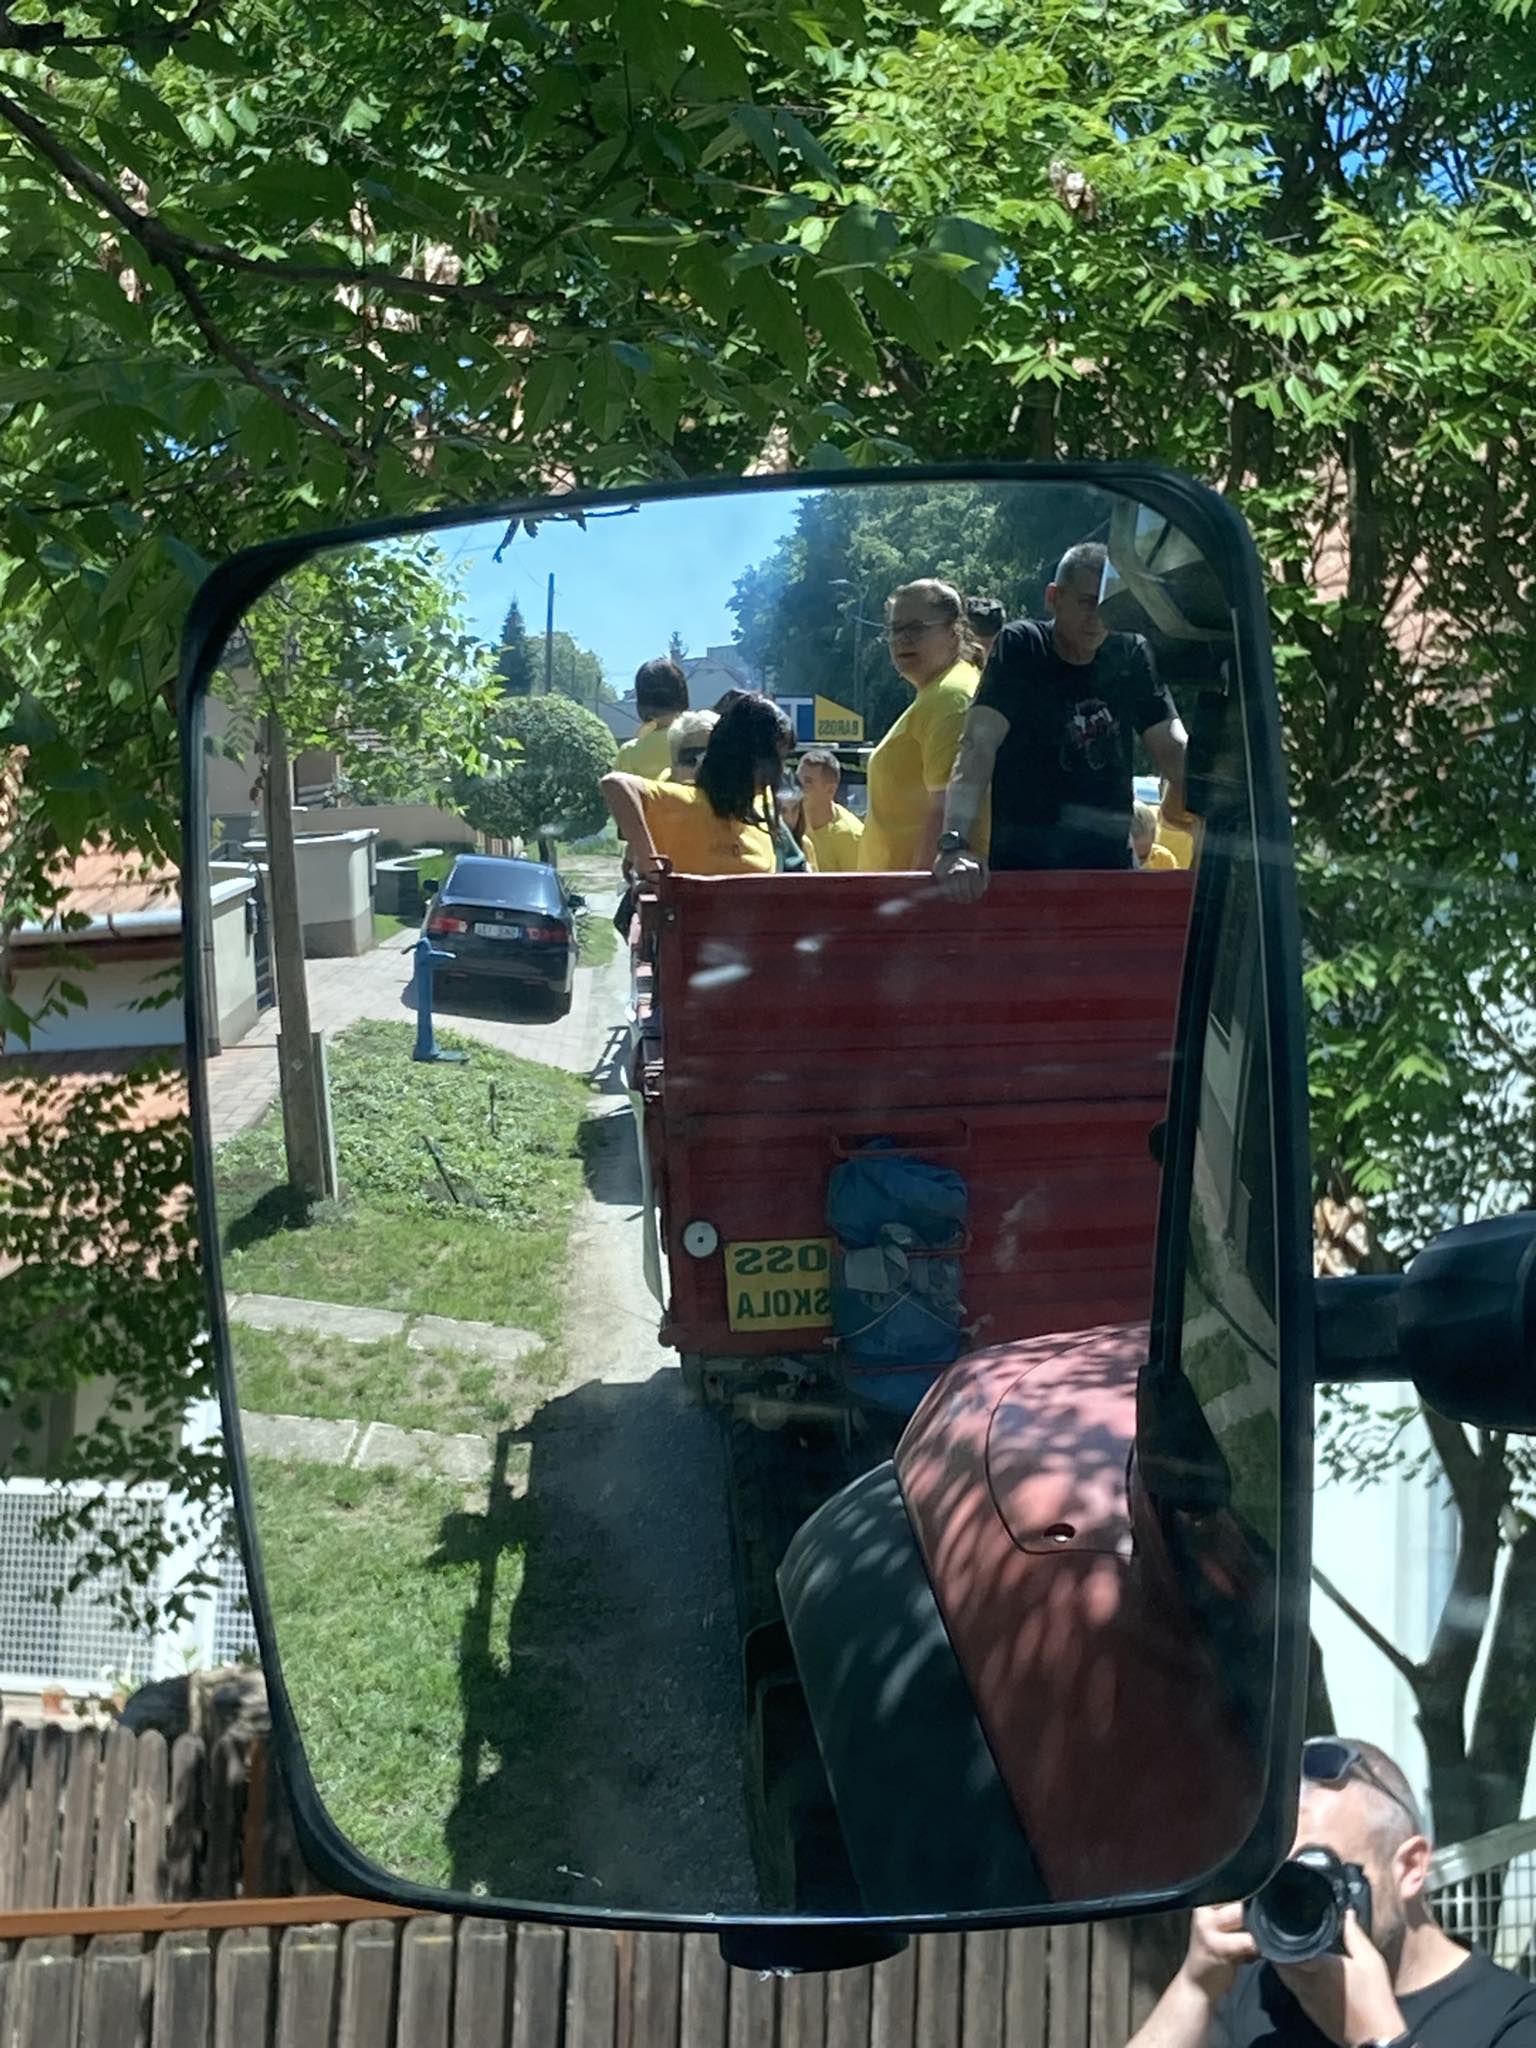 Sárga inget viselő emberek egy csoportja egy traktorra erősített piros pótkocsi hátuljában ül. A jelenet egy nagy oldaltükörben tükröződik. Egy ember látható az előtérben, aki fényképez, a háttérben pedig fák és házak.